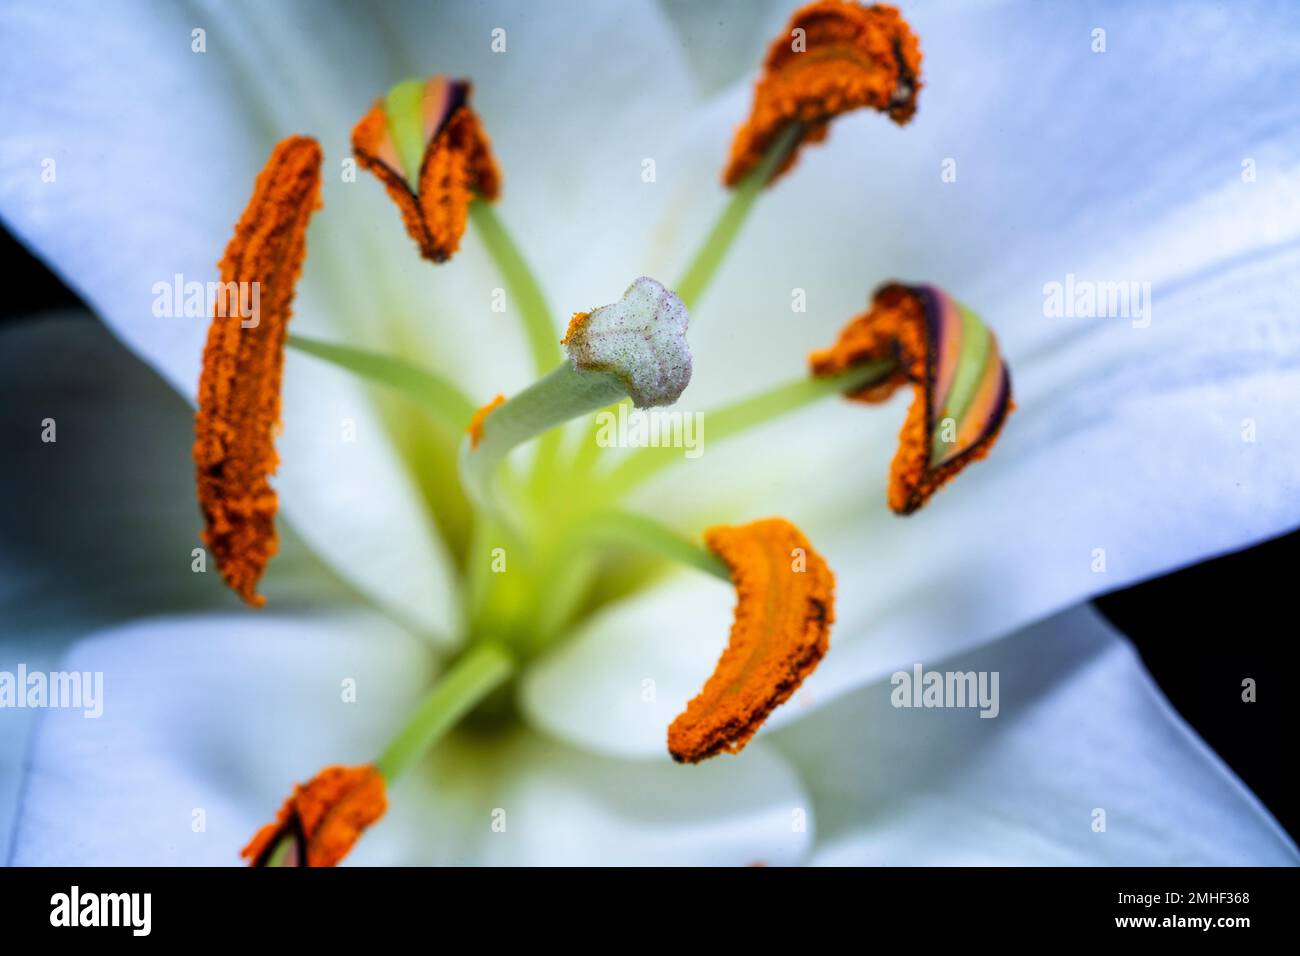 Primer plano de la flor blanca de lilly mostrando estigma, estilo, antera y filamento Foto de stock